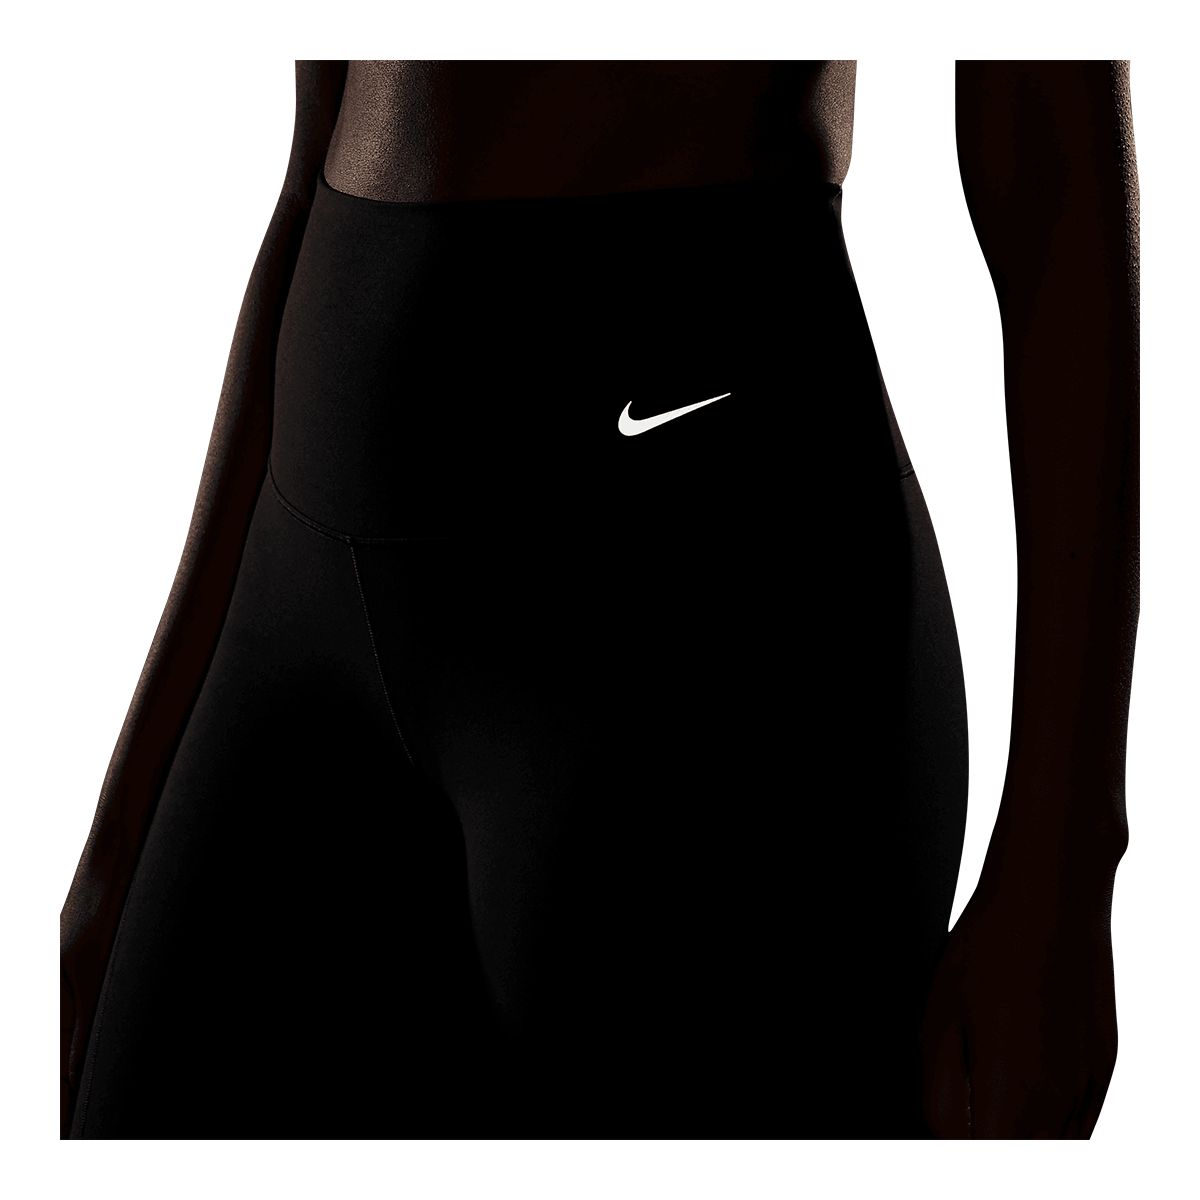 Black Zenvy 7/8 Leggings by Nike on Sale